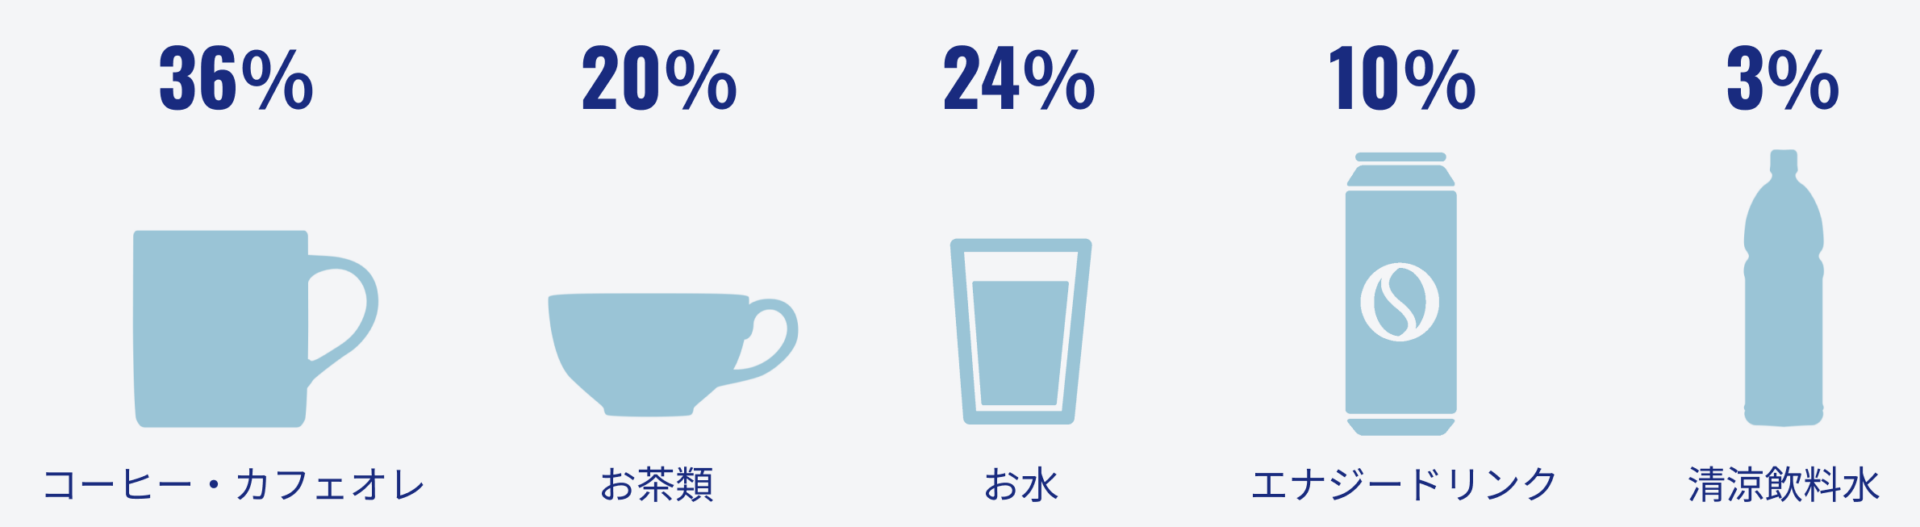 仕事中に飲む飲み物ごとの割合を示す図です。ーヒー・カフェオレを飲む人は36％、お茶類を飲む人は20％、お水を飲む人は24％、エナジードリンクを飲む人は10％、清涼飲料水を飲む人は3％という結果になりました。